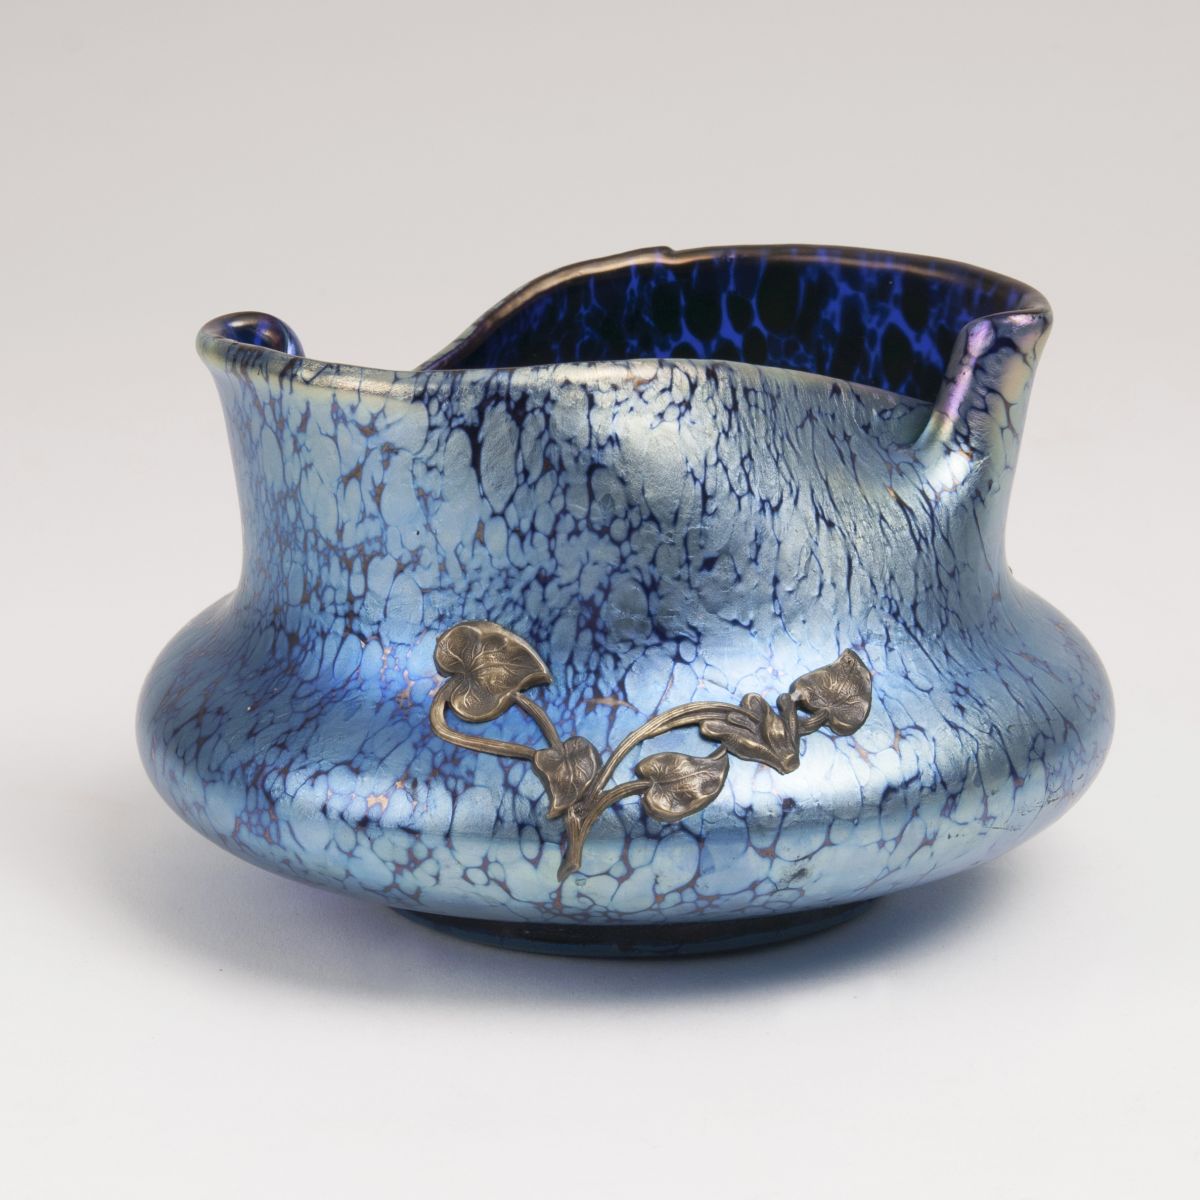 An Art Nouveau Bowl with 'Papillon' Decor